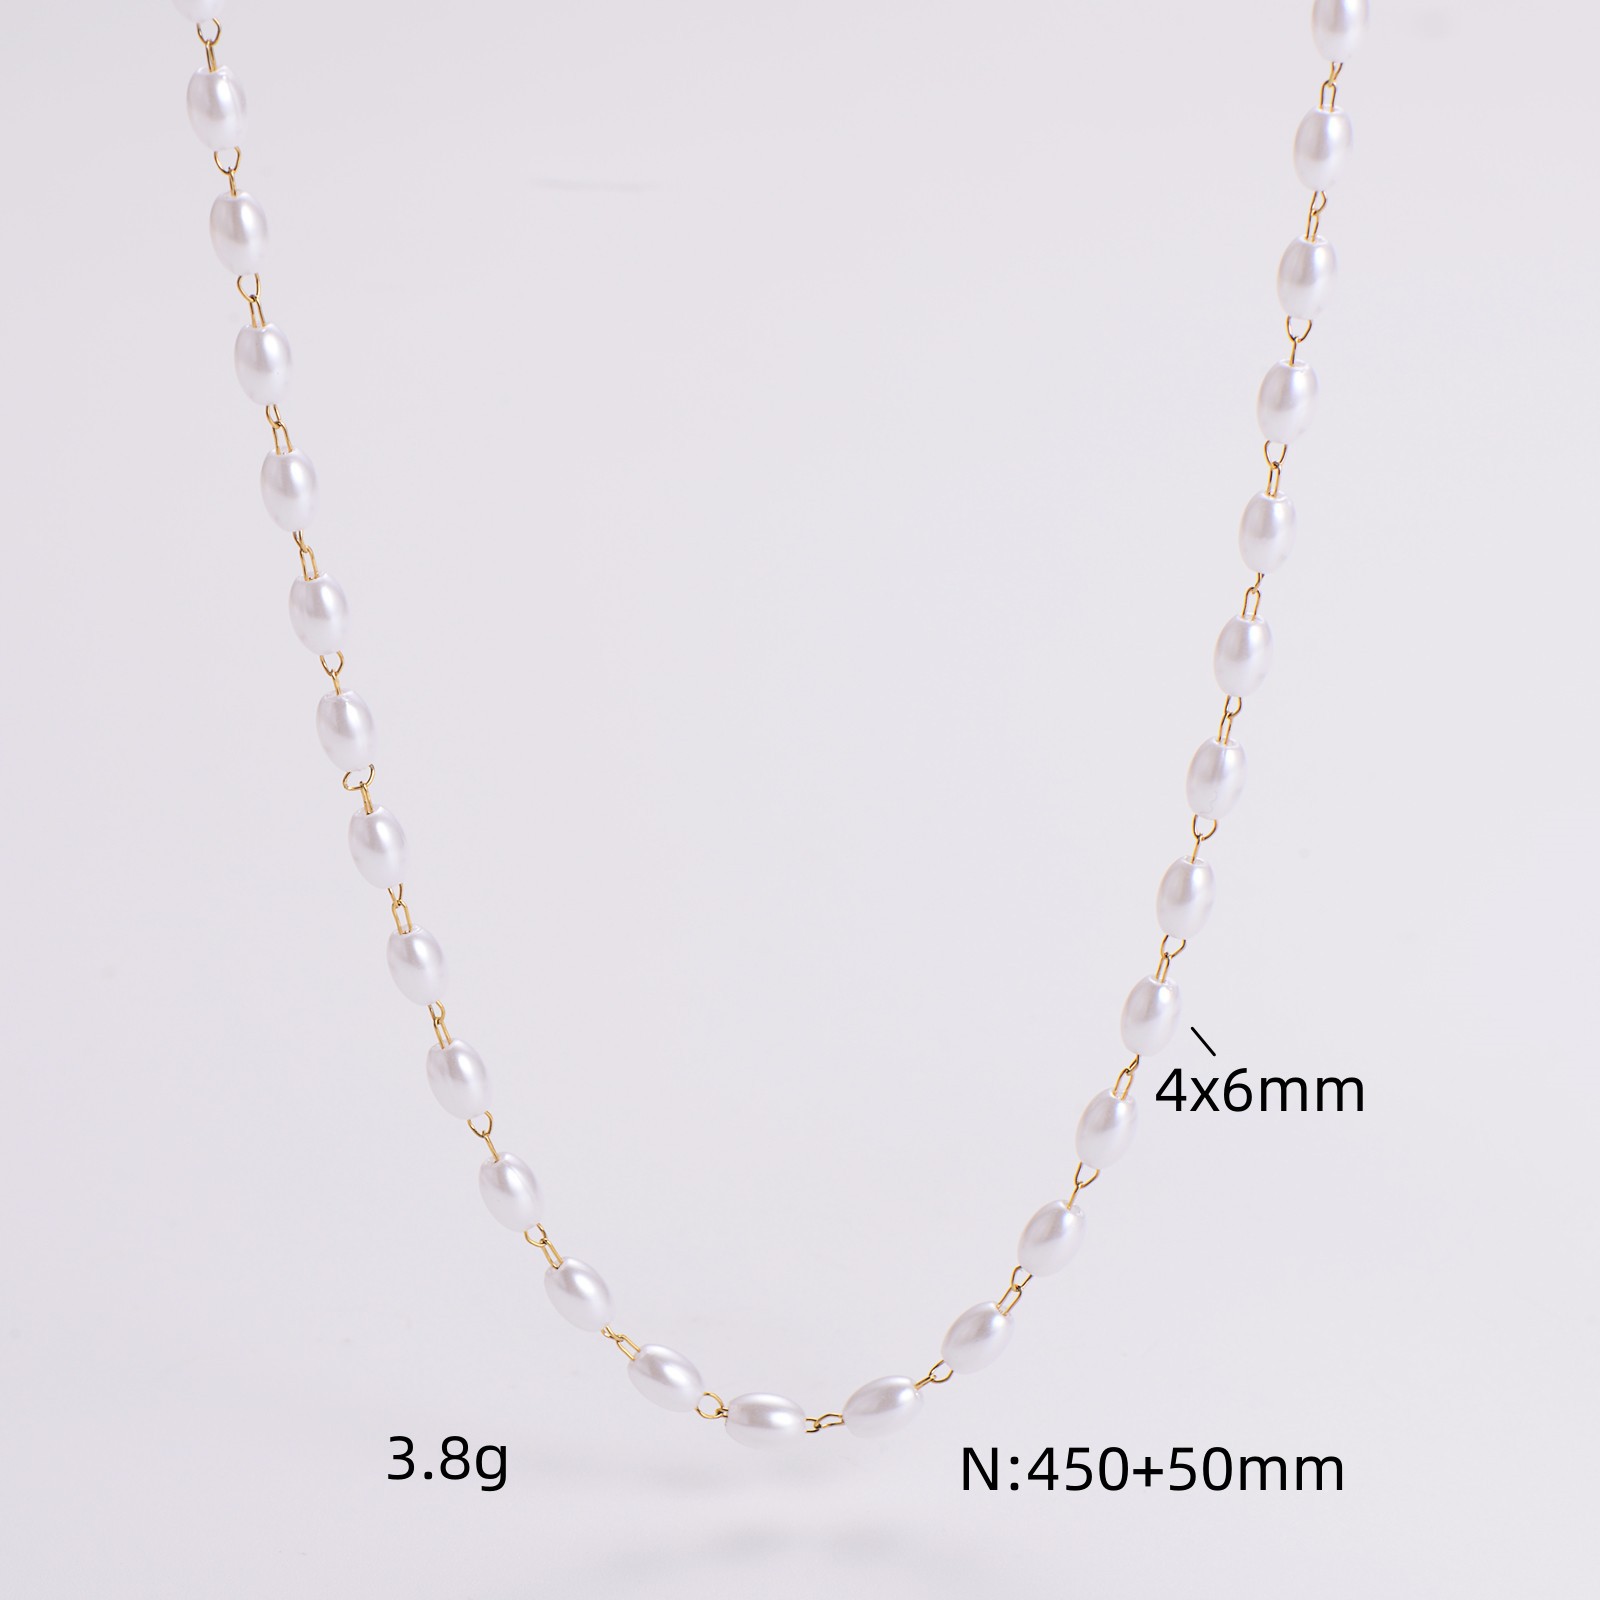 2:4x6mm necklace 45cm 5cm